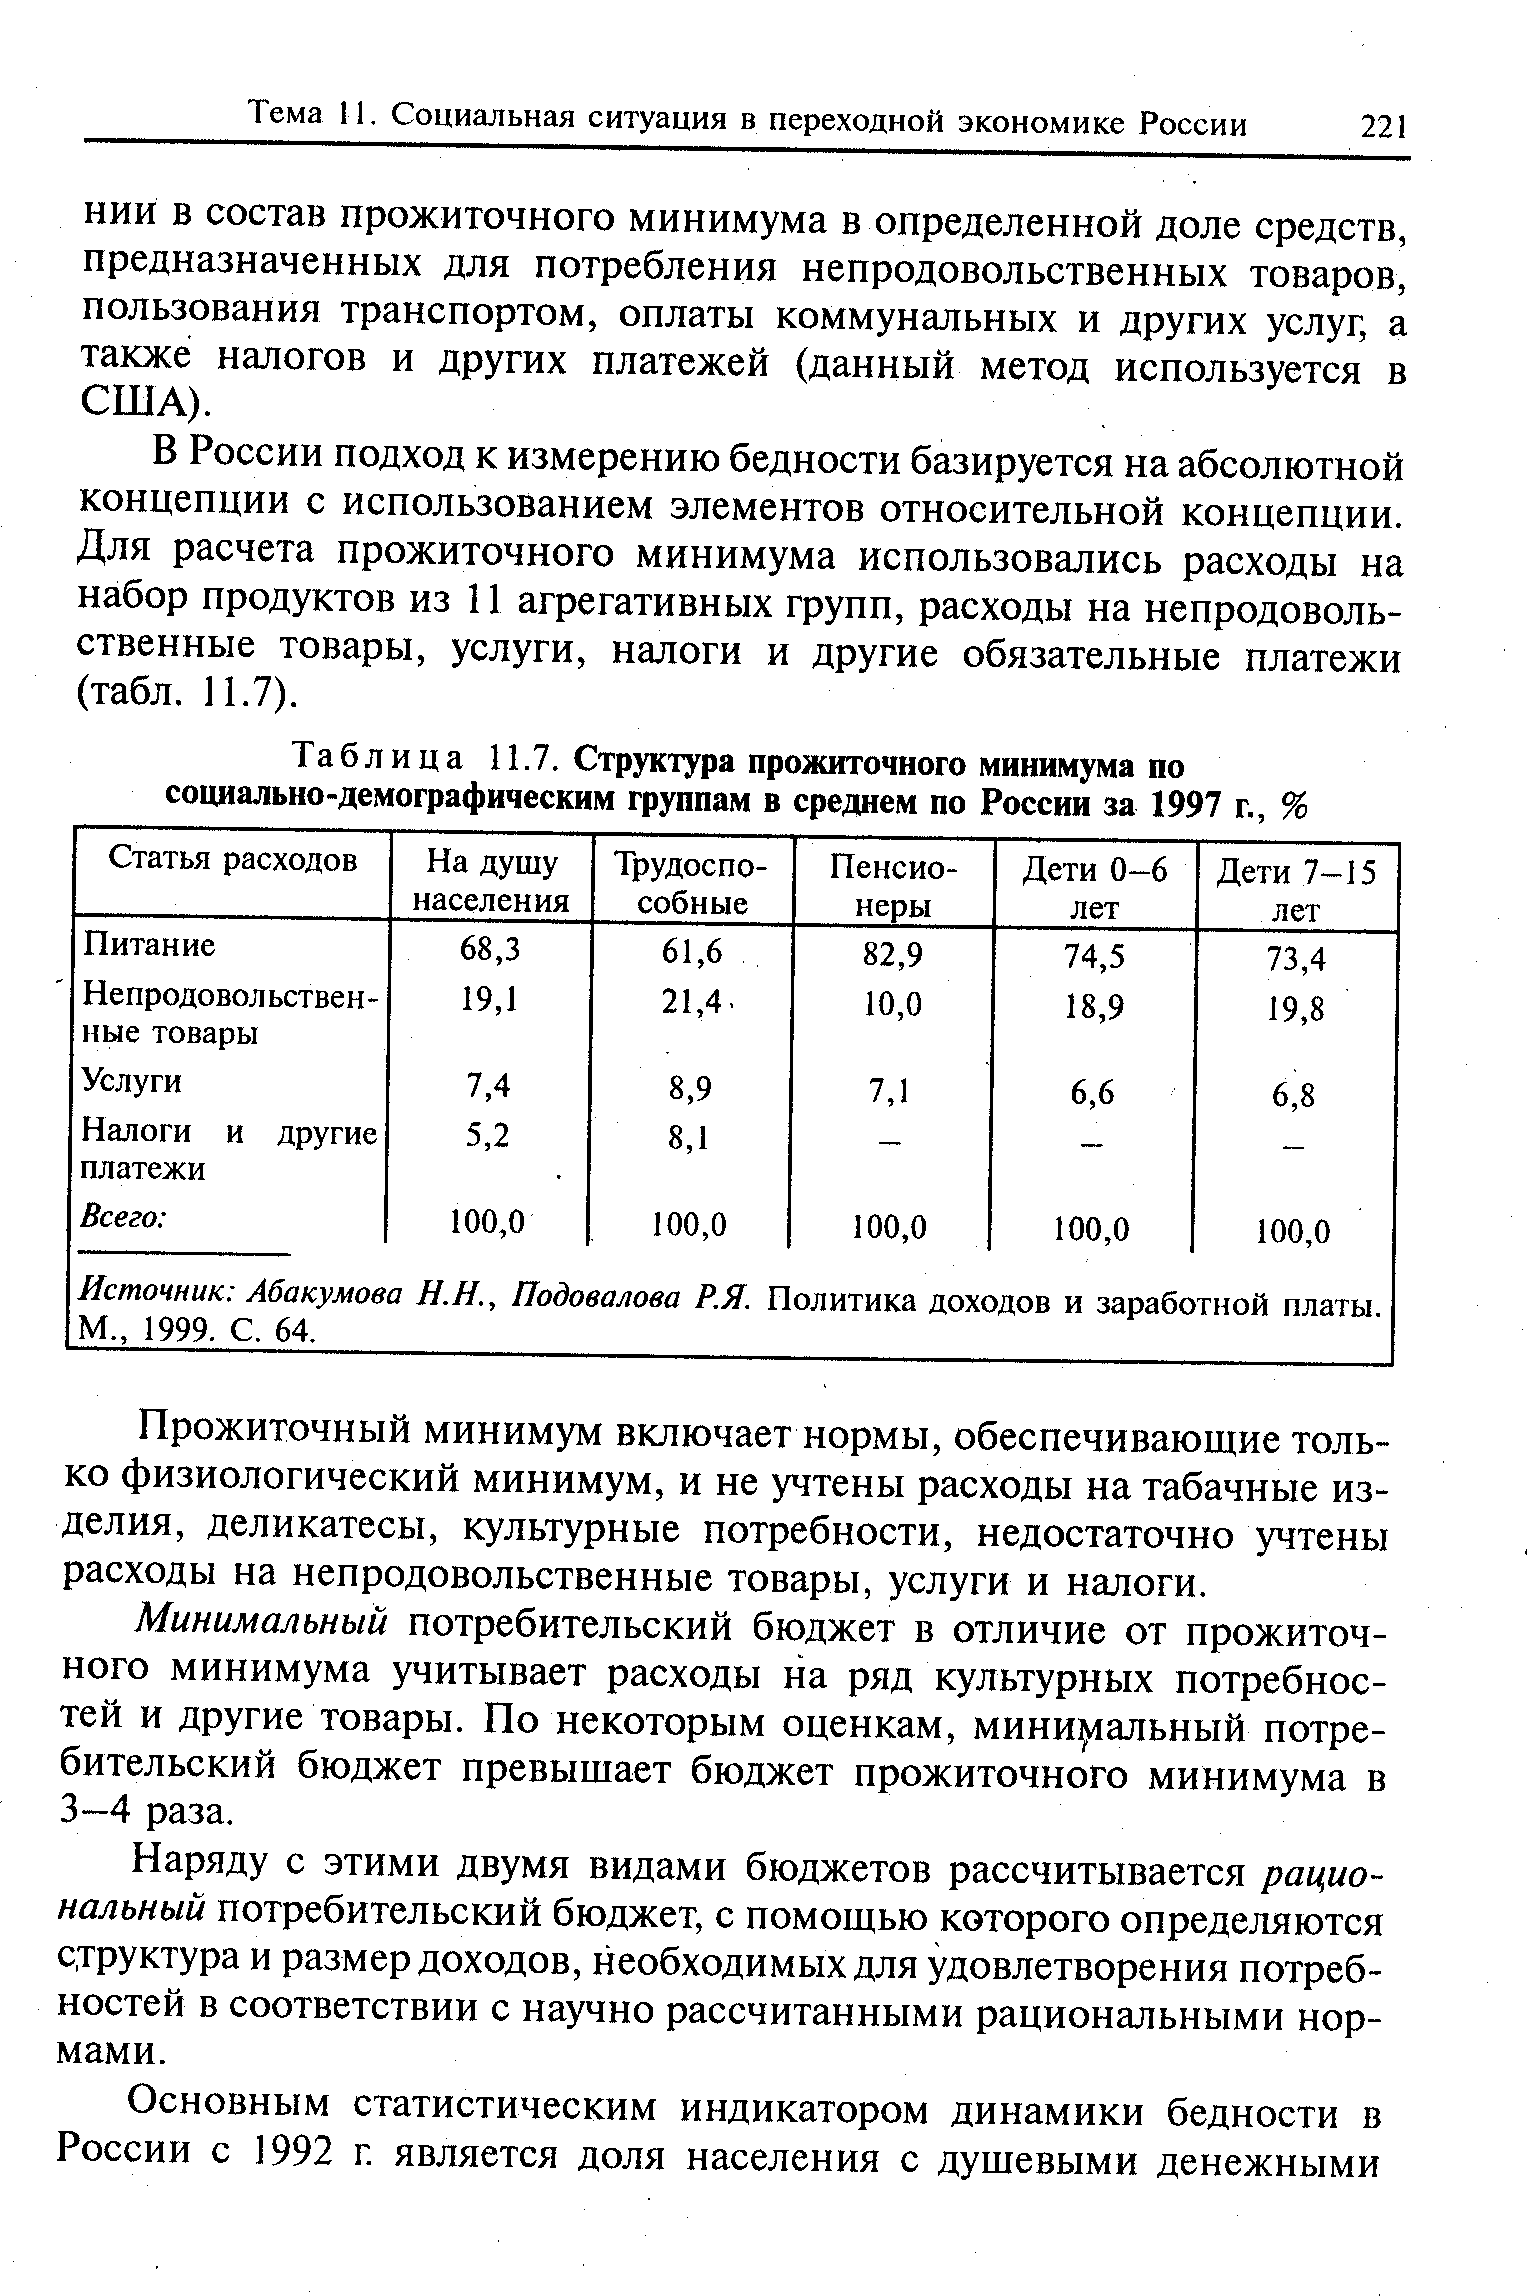 Таблица 11.7. Структура <a href="/info/10204">прожиточного минимума</a> по социально-демографическим группам в среднем по России за 1997 г., %
